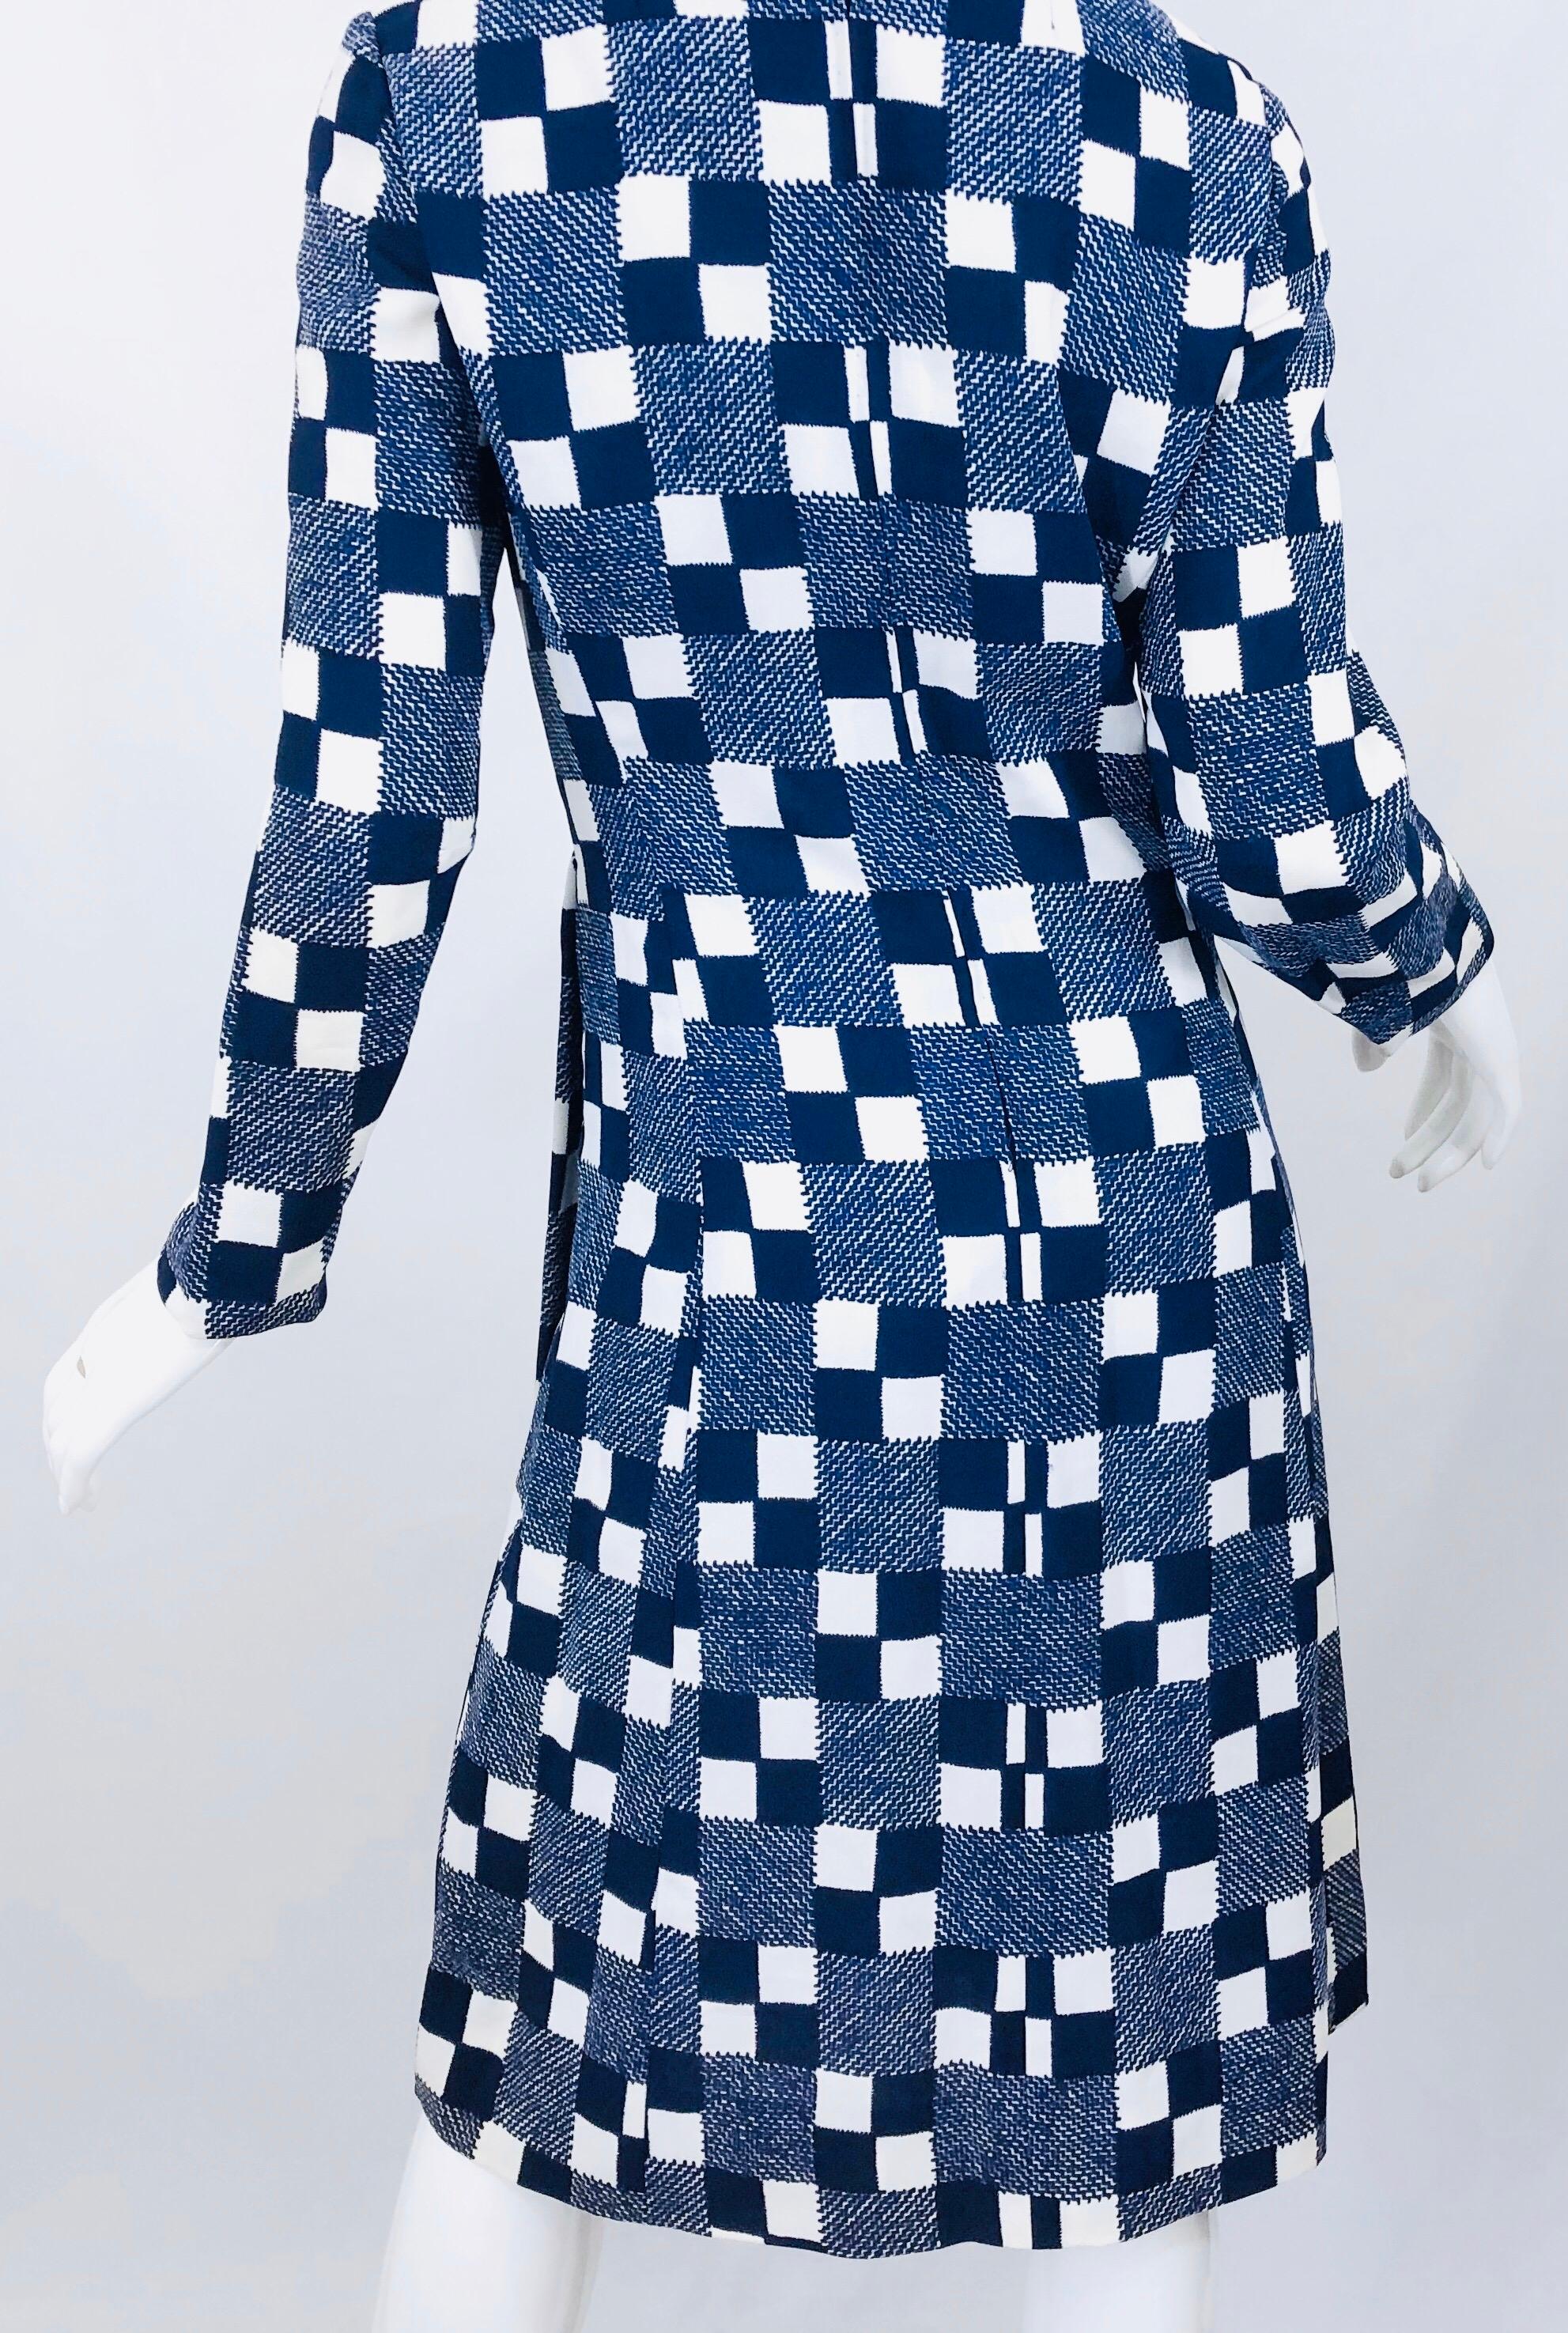 Baron Peters - Robe en crêpe de rayonne bleu marine et blanc à carreaux, vintage, années 1960 en vente 3